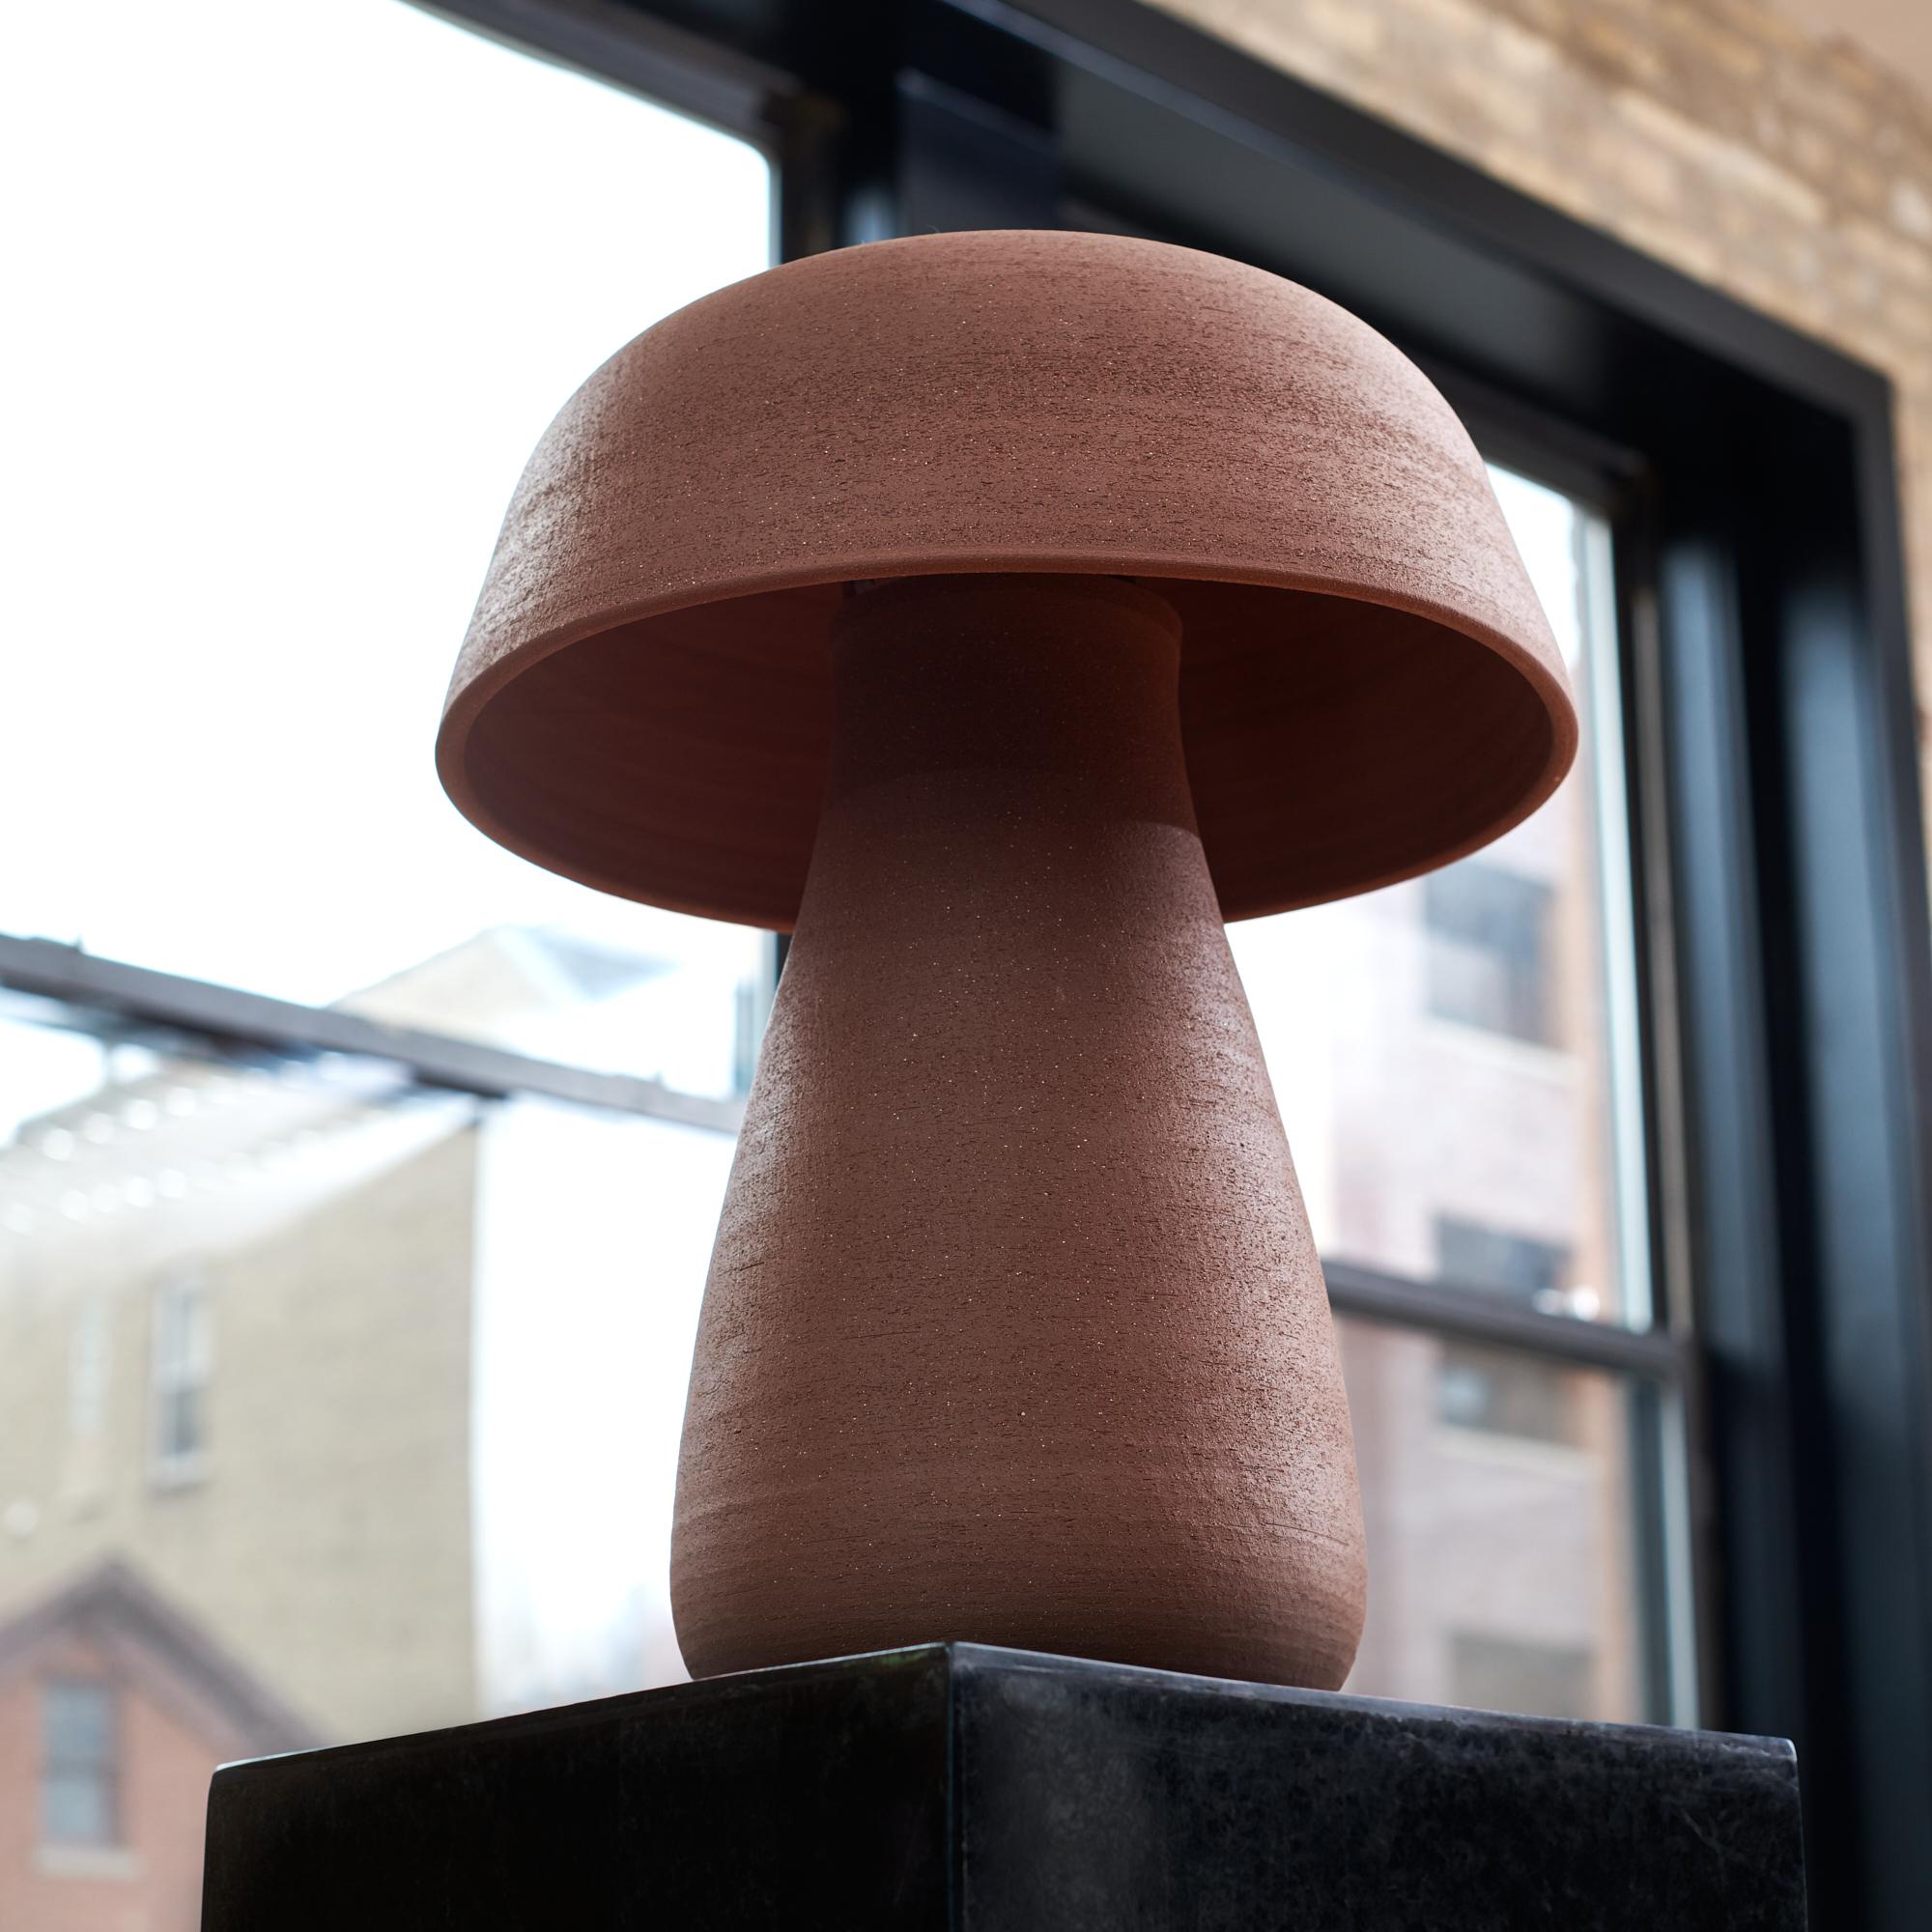 brown mushroom lamp